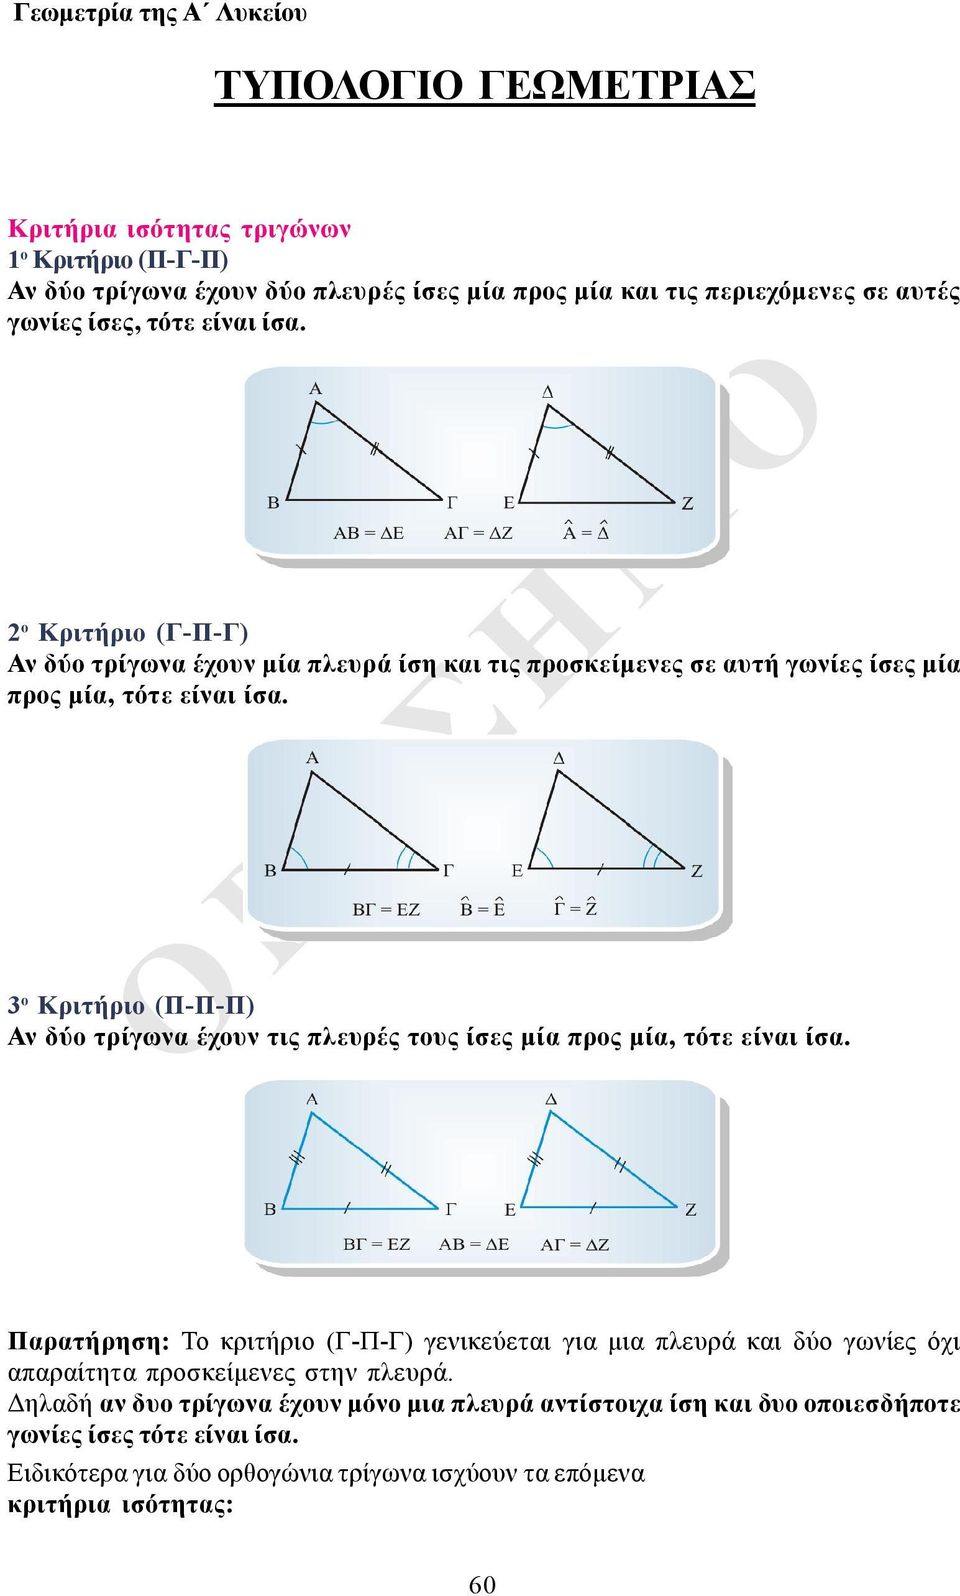 3 ο Κριτήριο (Π-Π-Π) Αν δύο τρίγωνα έχουν τις πλευρές τους ίσες μία προς μία, τότε είναι ίσα.